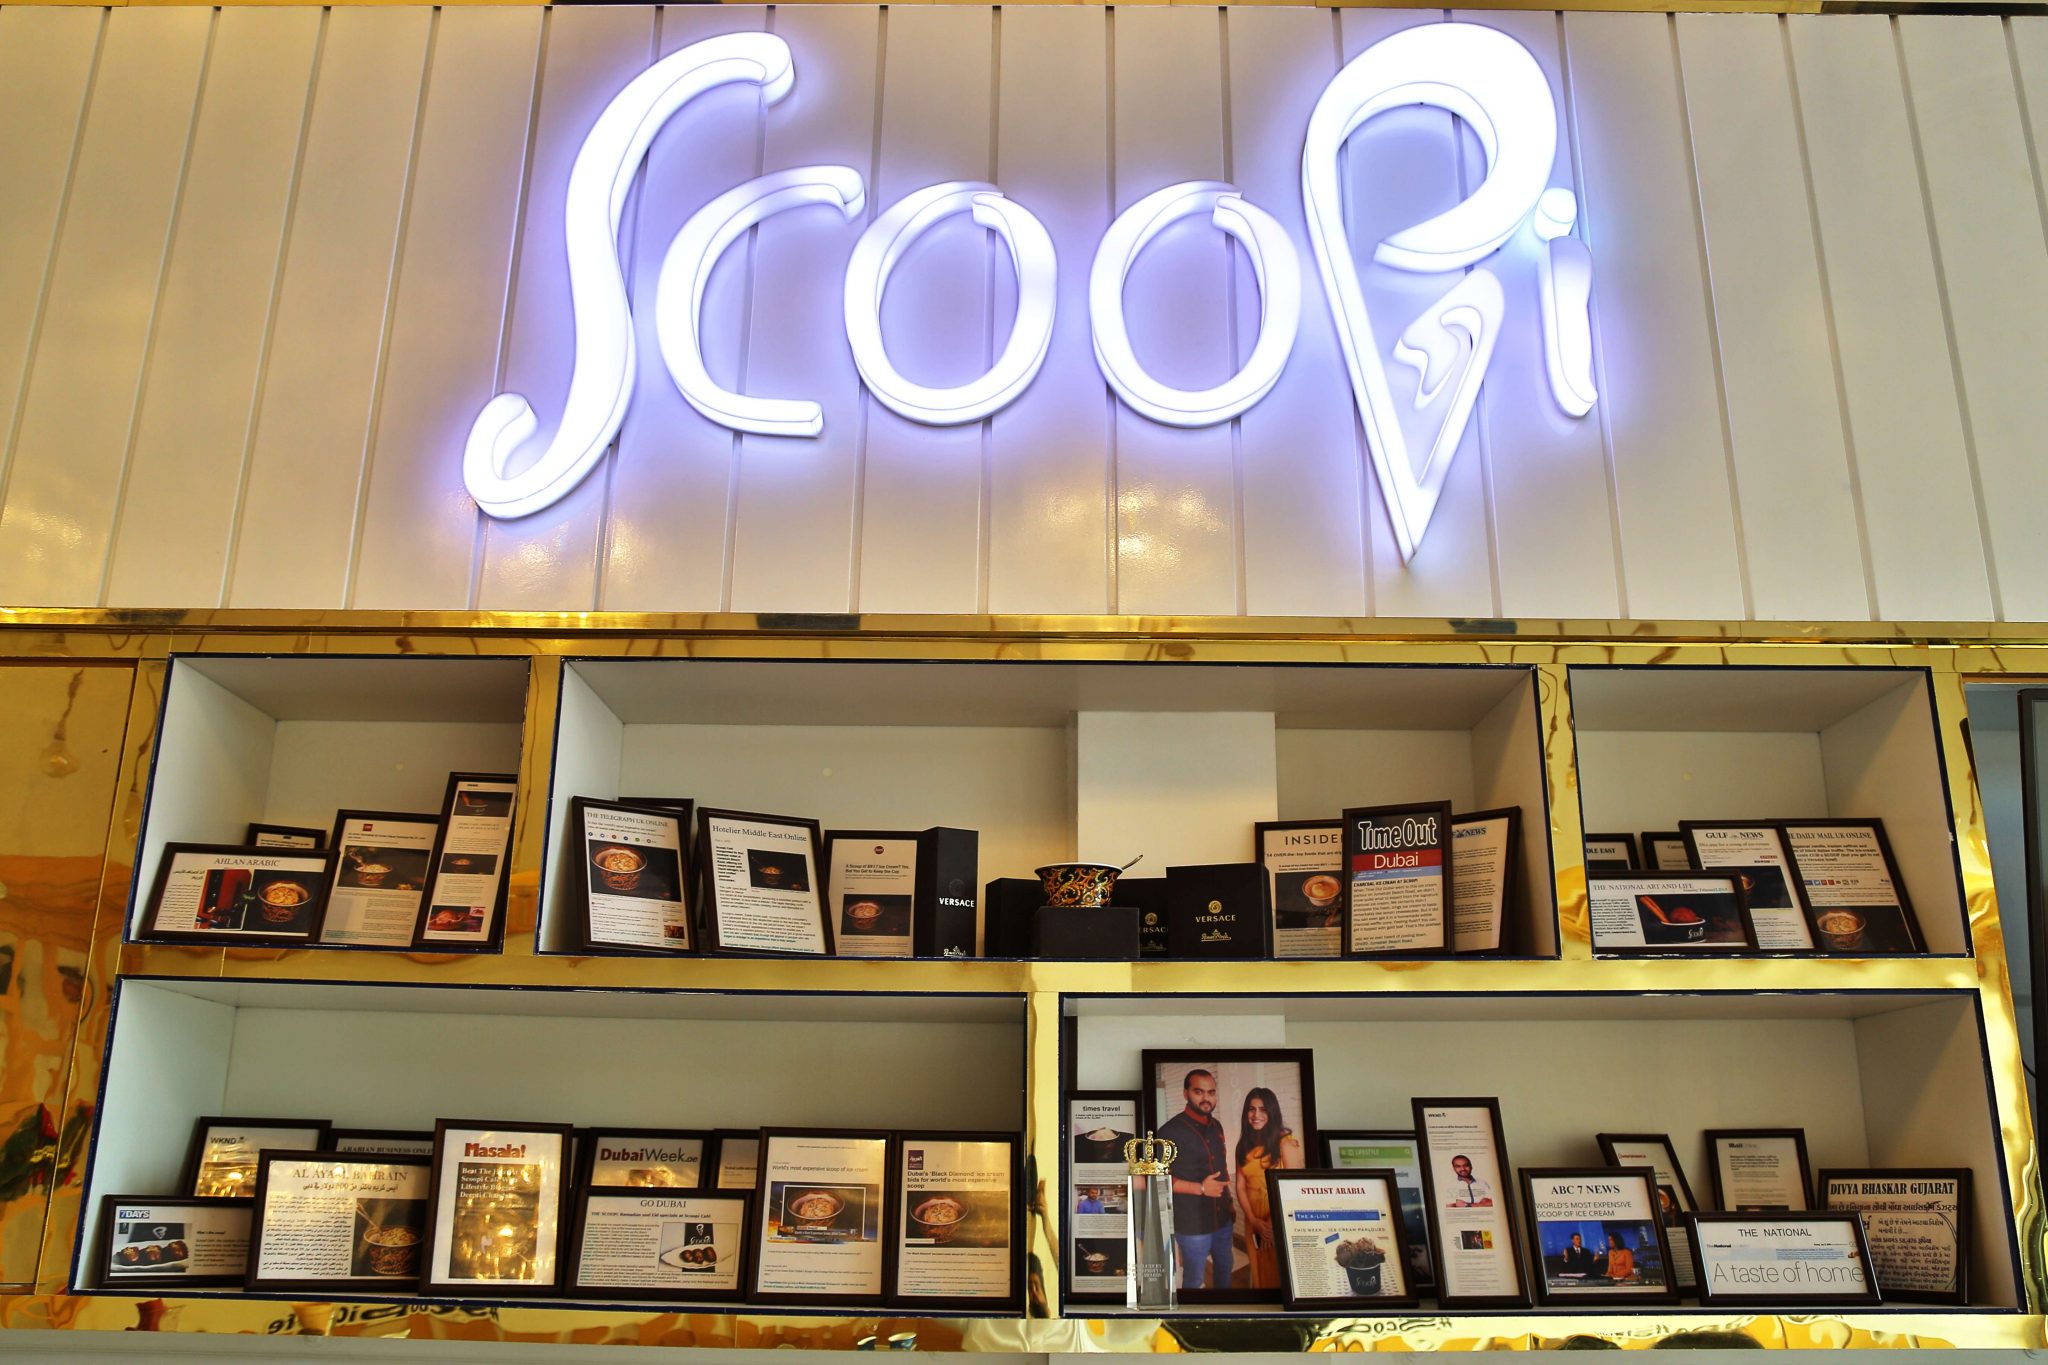 Scoopi Cafe Dubai Store 2 (1)